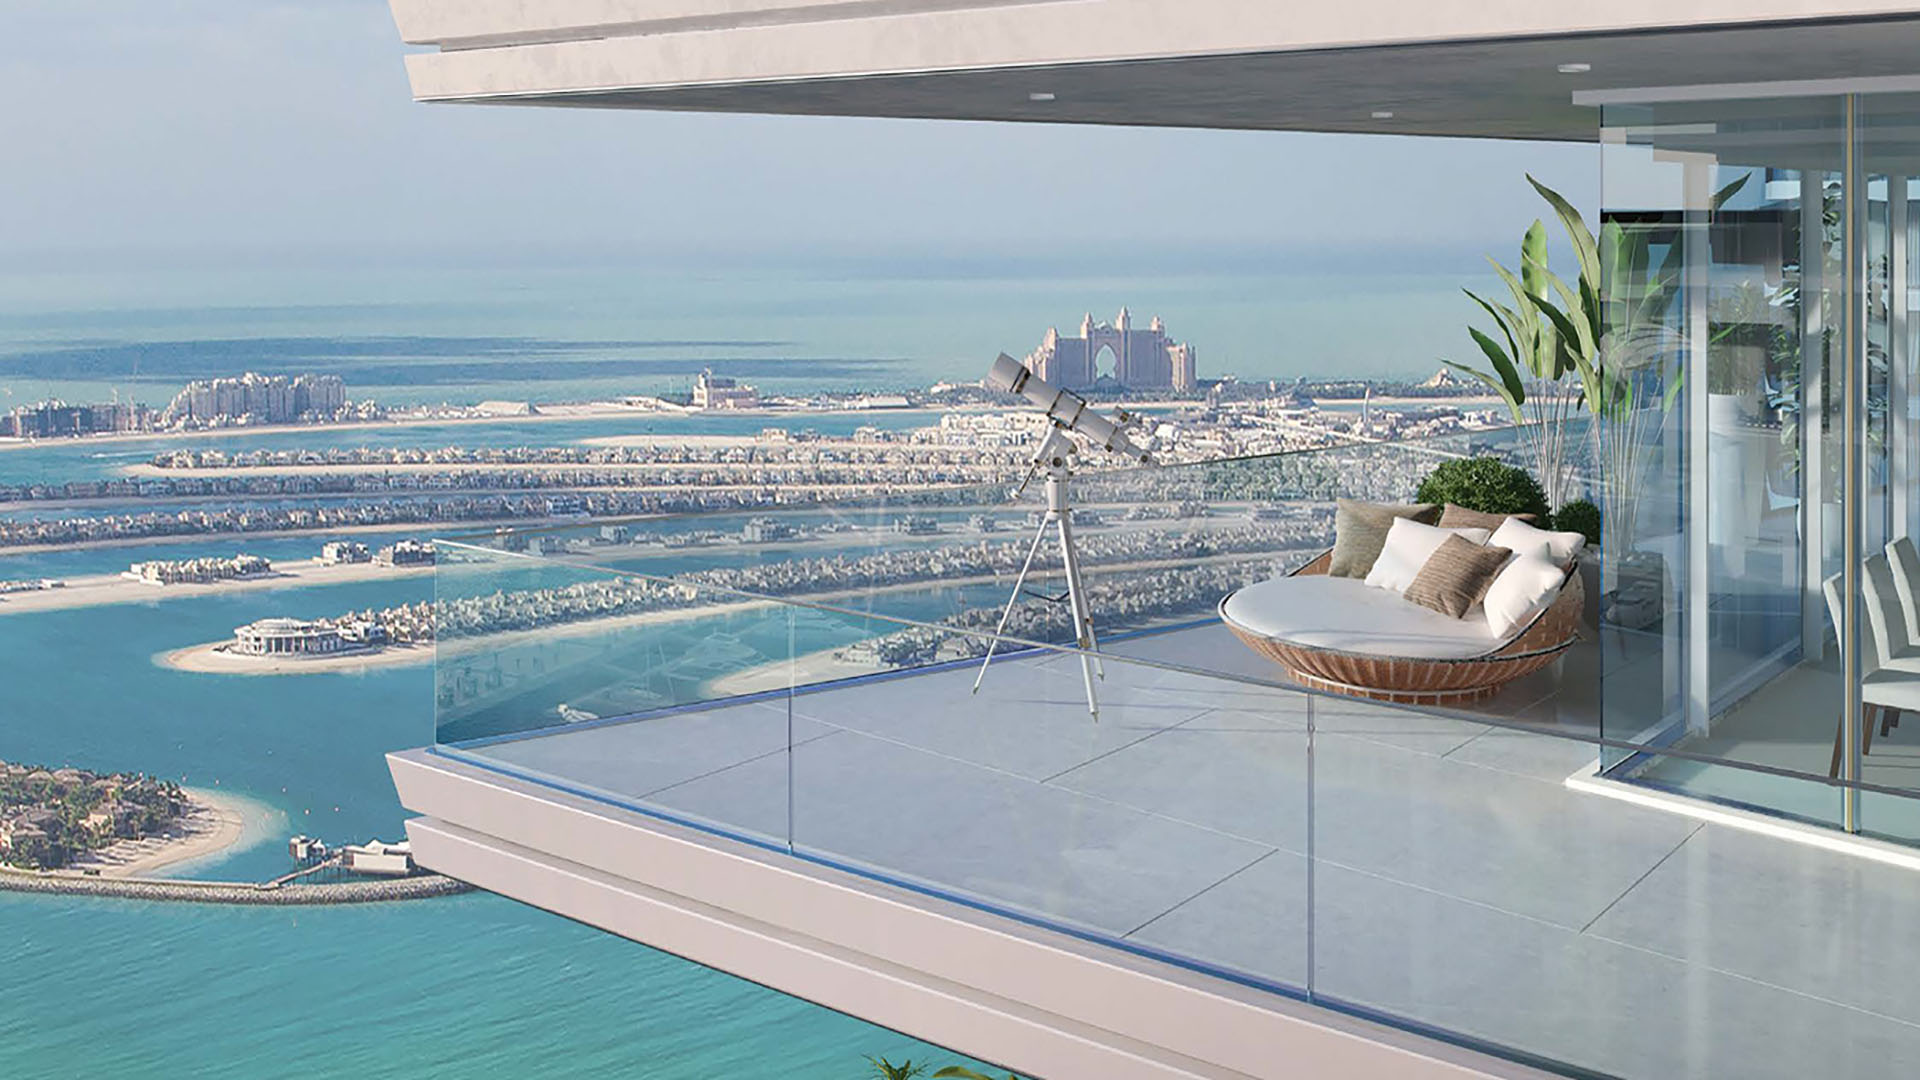 BEACH VISTA by Emaar Properties in Emaar beachfront, Dubai, UAE6